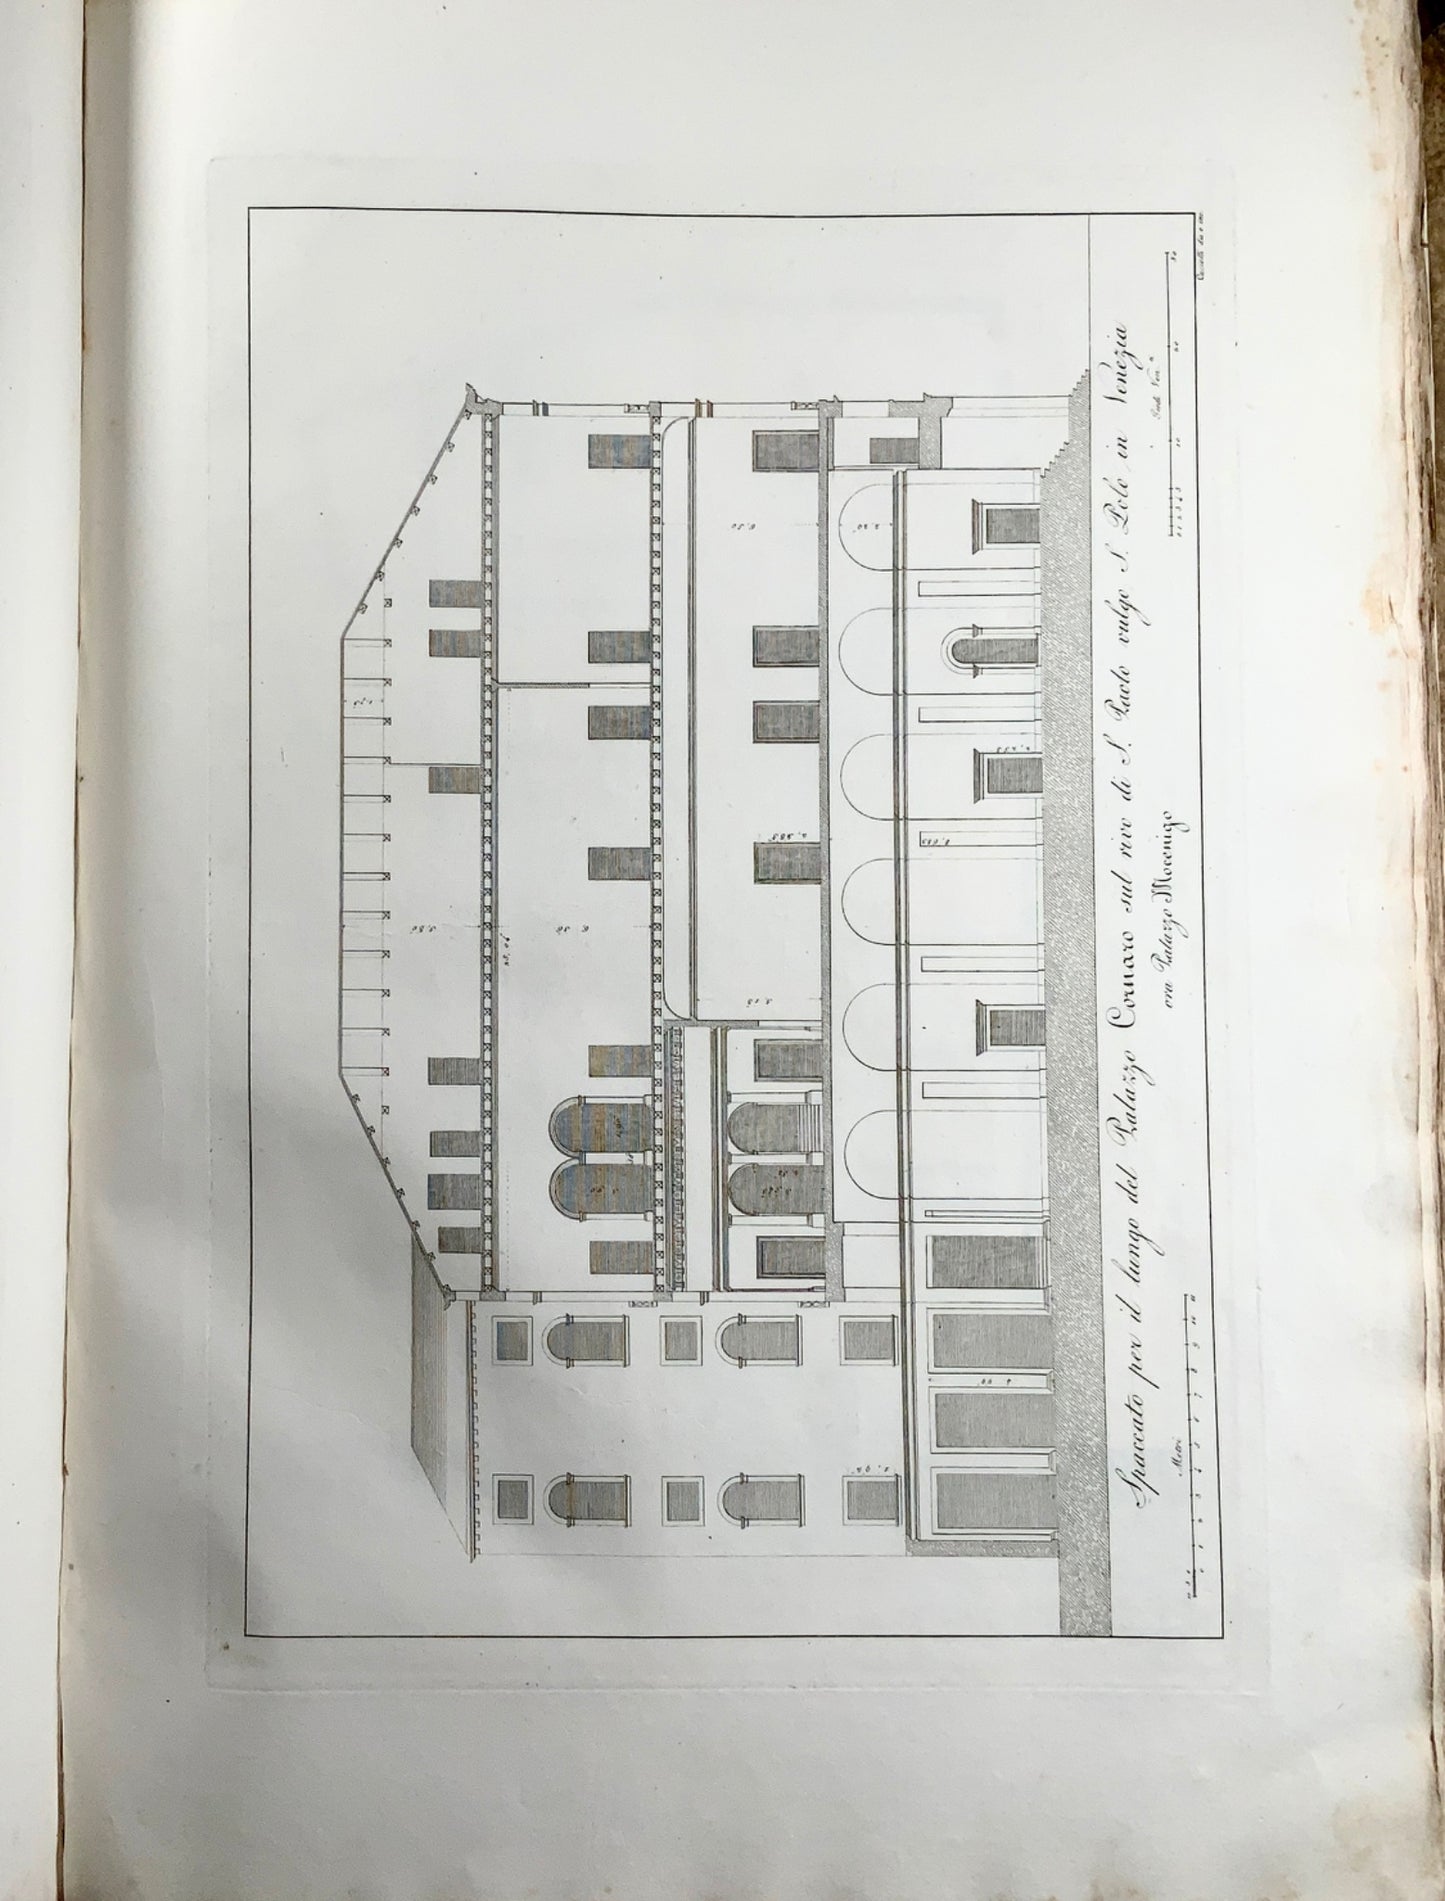 1823 Sanmicheli, M. - Ronzani, F. Le fabbriche civili 63 large engravings - Book, Architecture